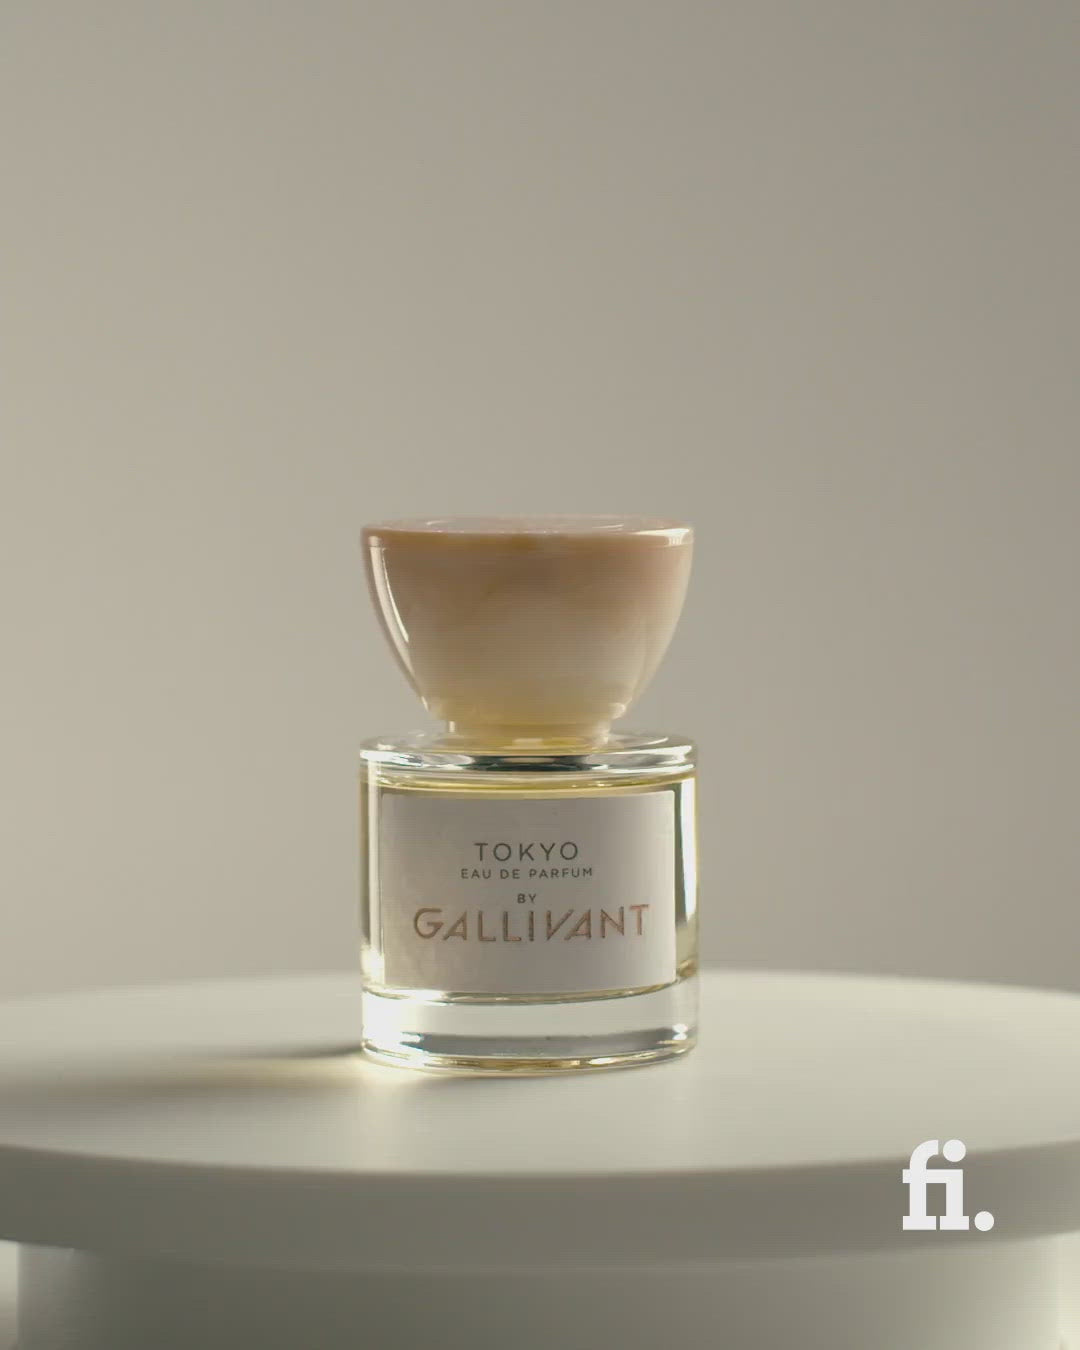 Video of 30ml Tokyo Eau de Parfum by Gallivant